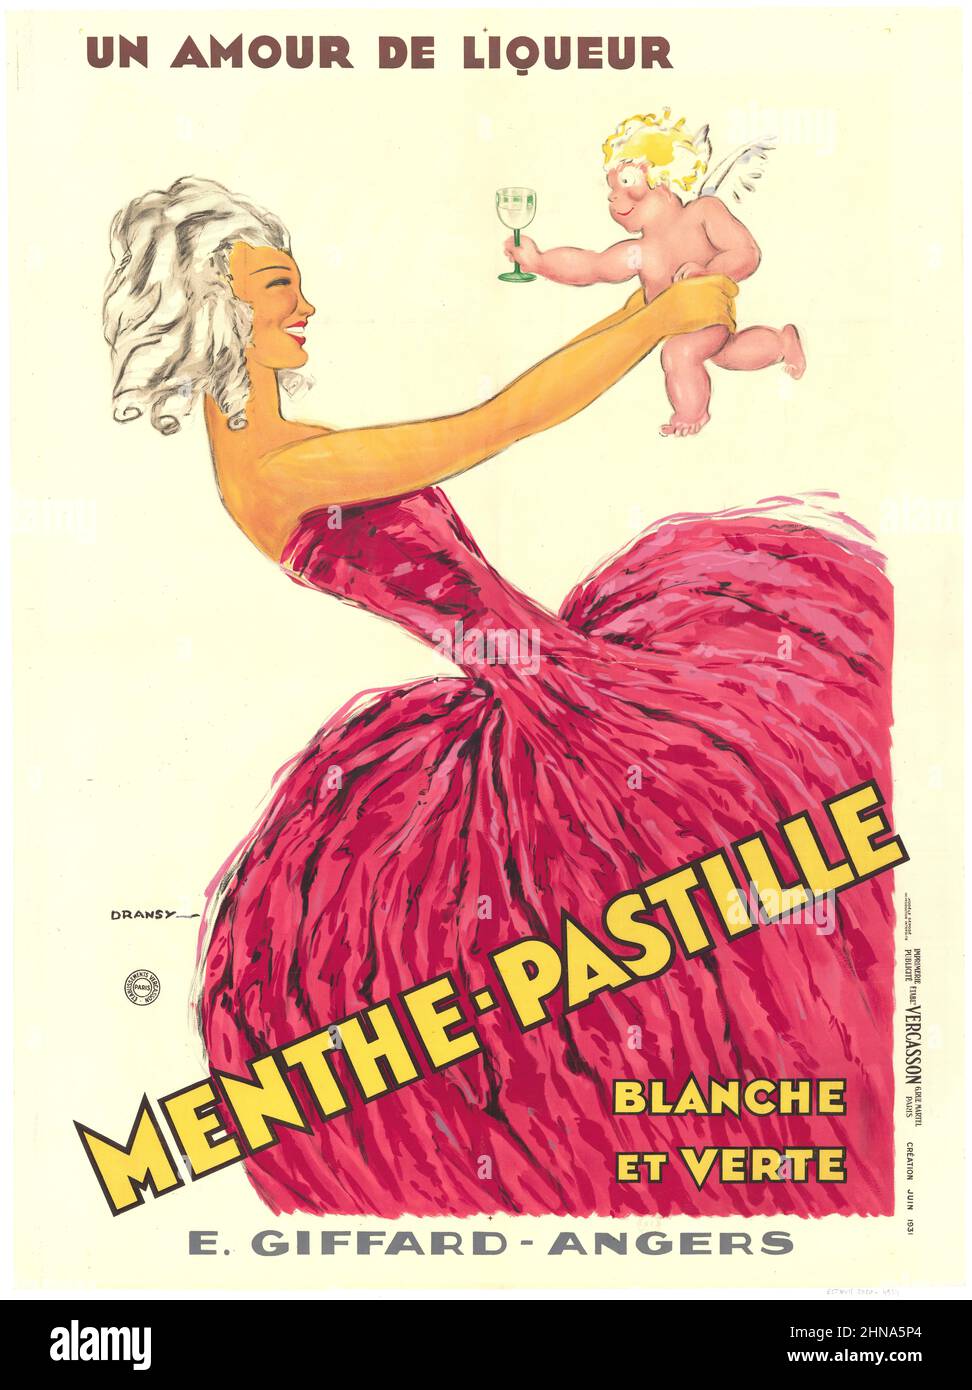 Jules Isnard Dransy - Un amour du Liquor. Menthe-Pastille, blanc et vert -1931 Banque D'Images